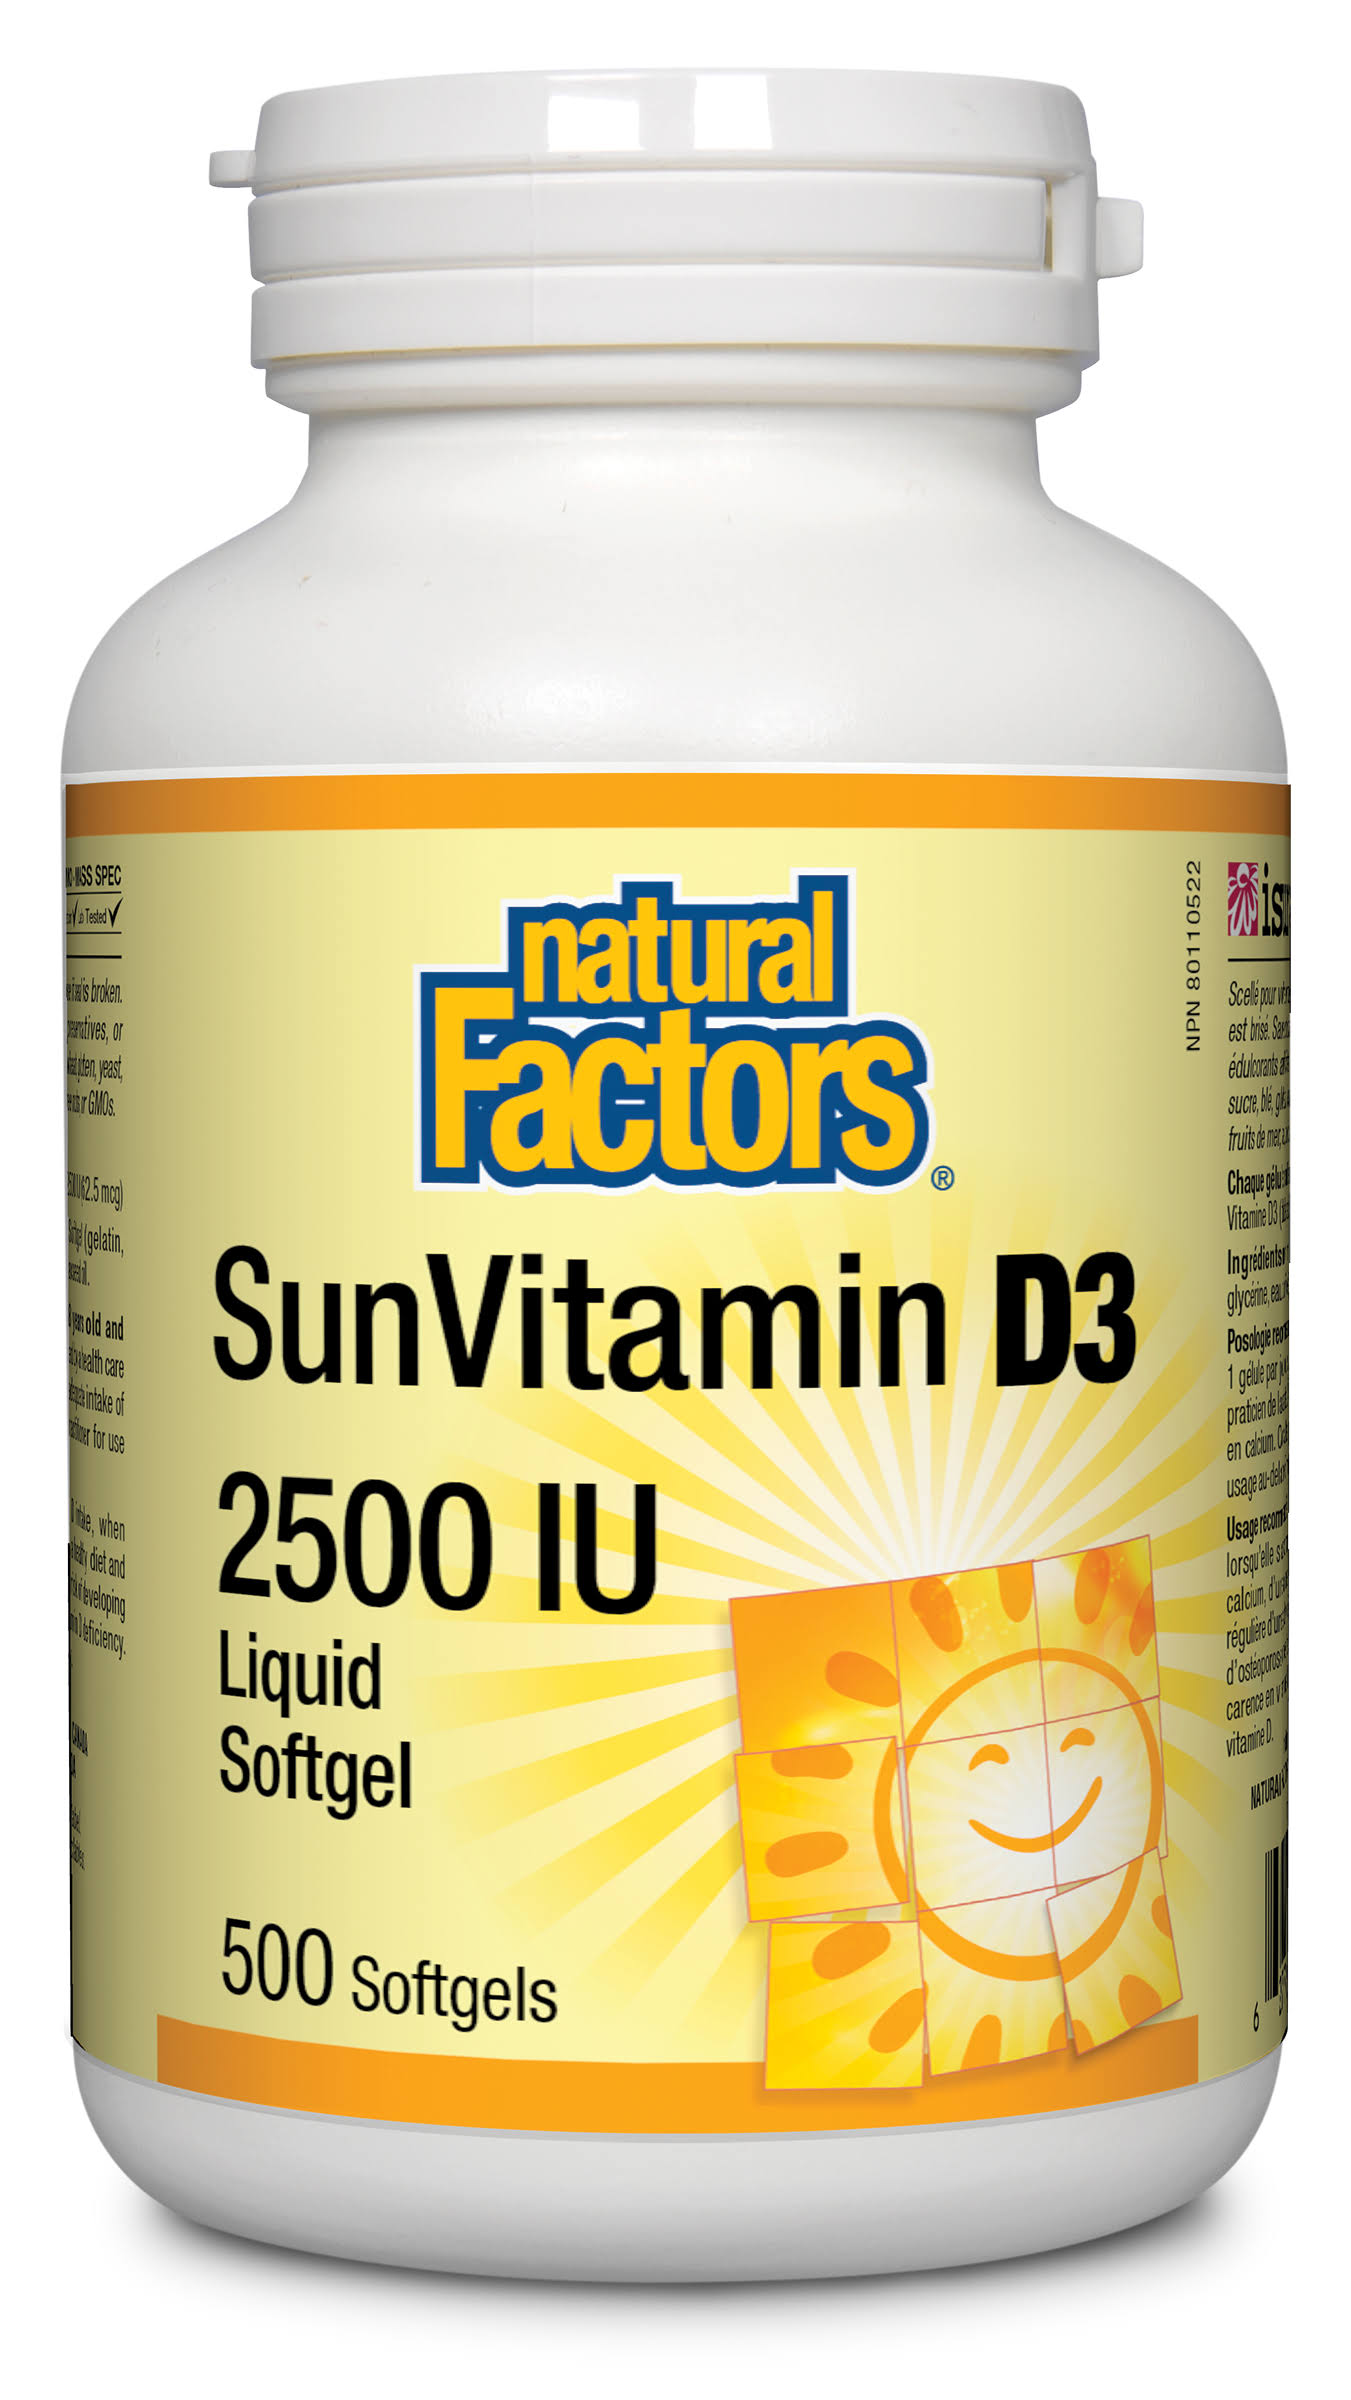 Natural Factors - SunVitamin D3 2500 IU 500 Softgels